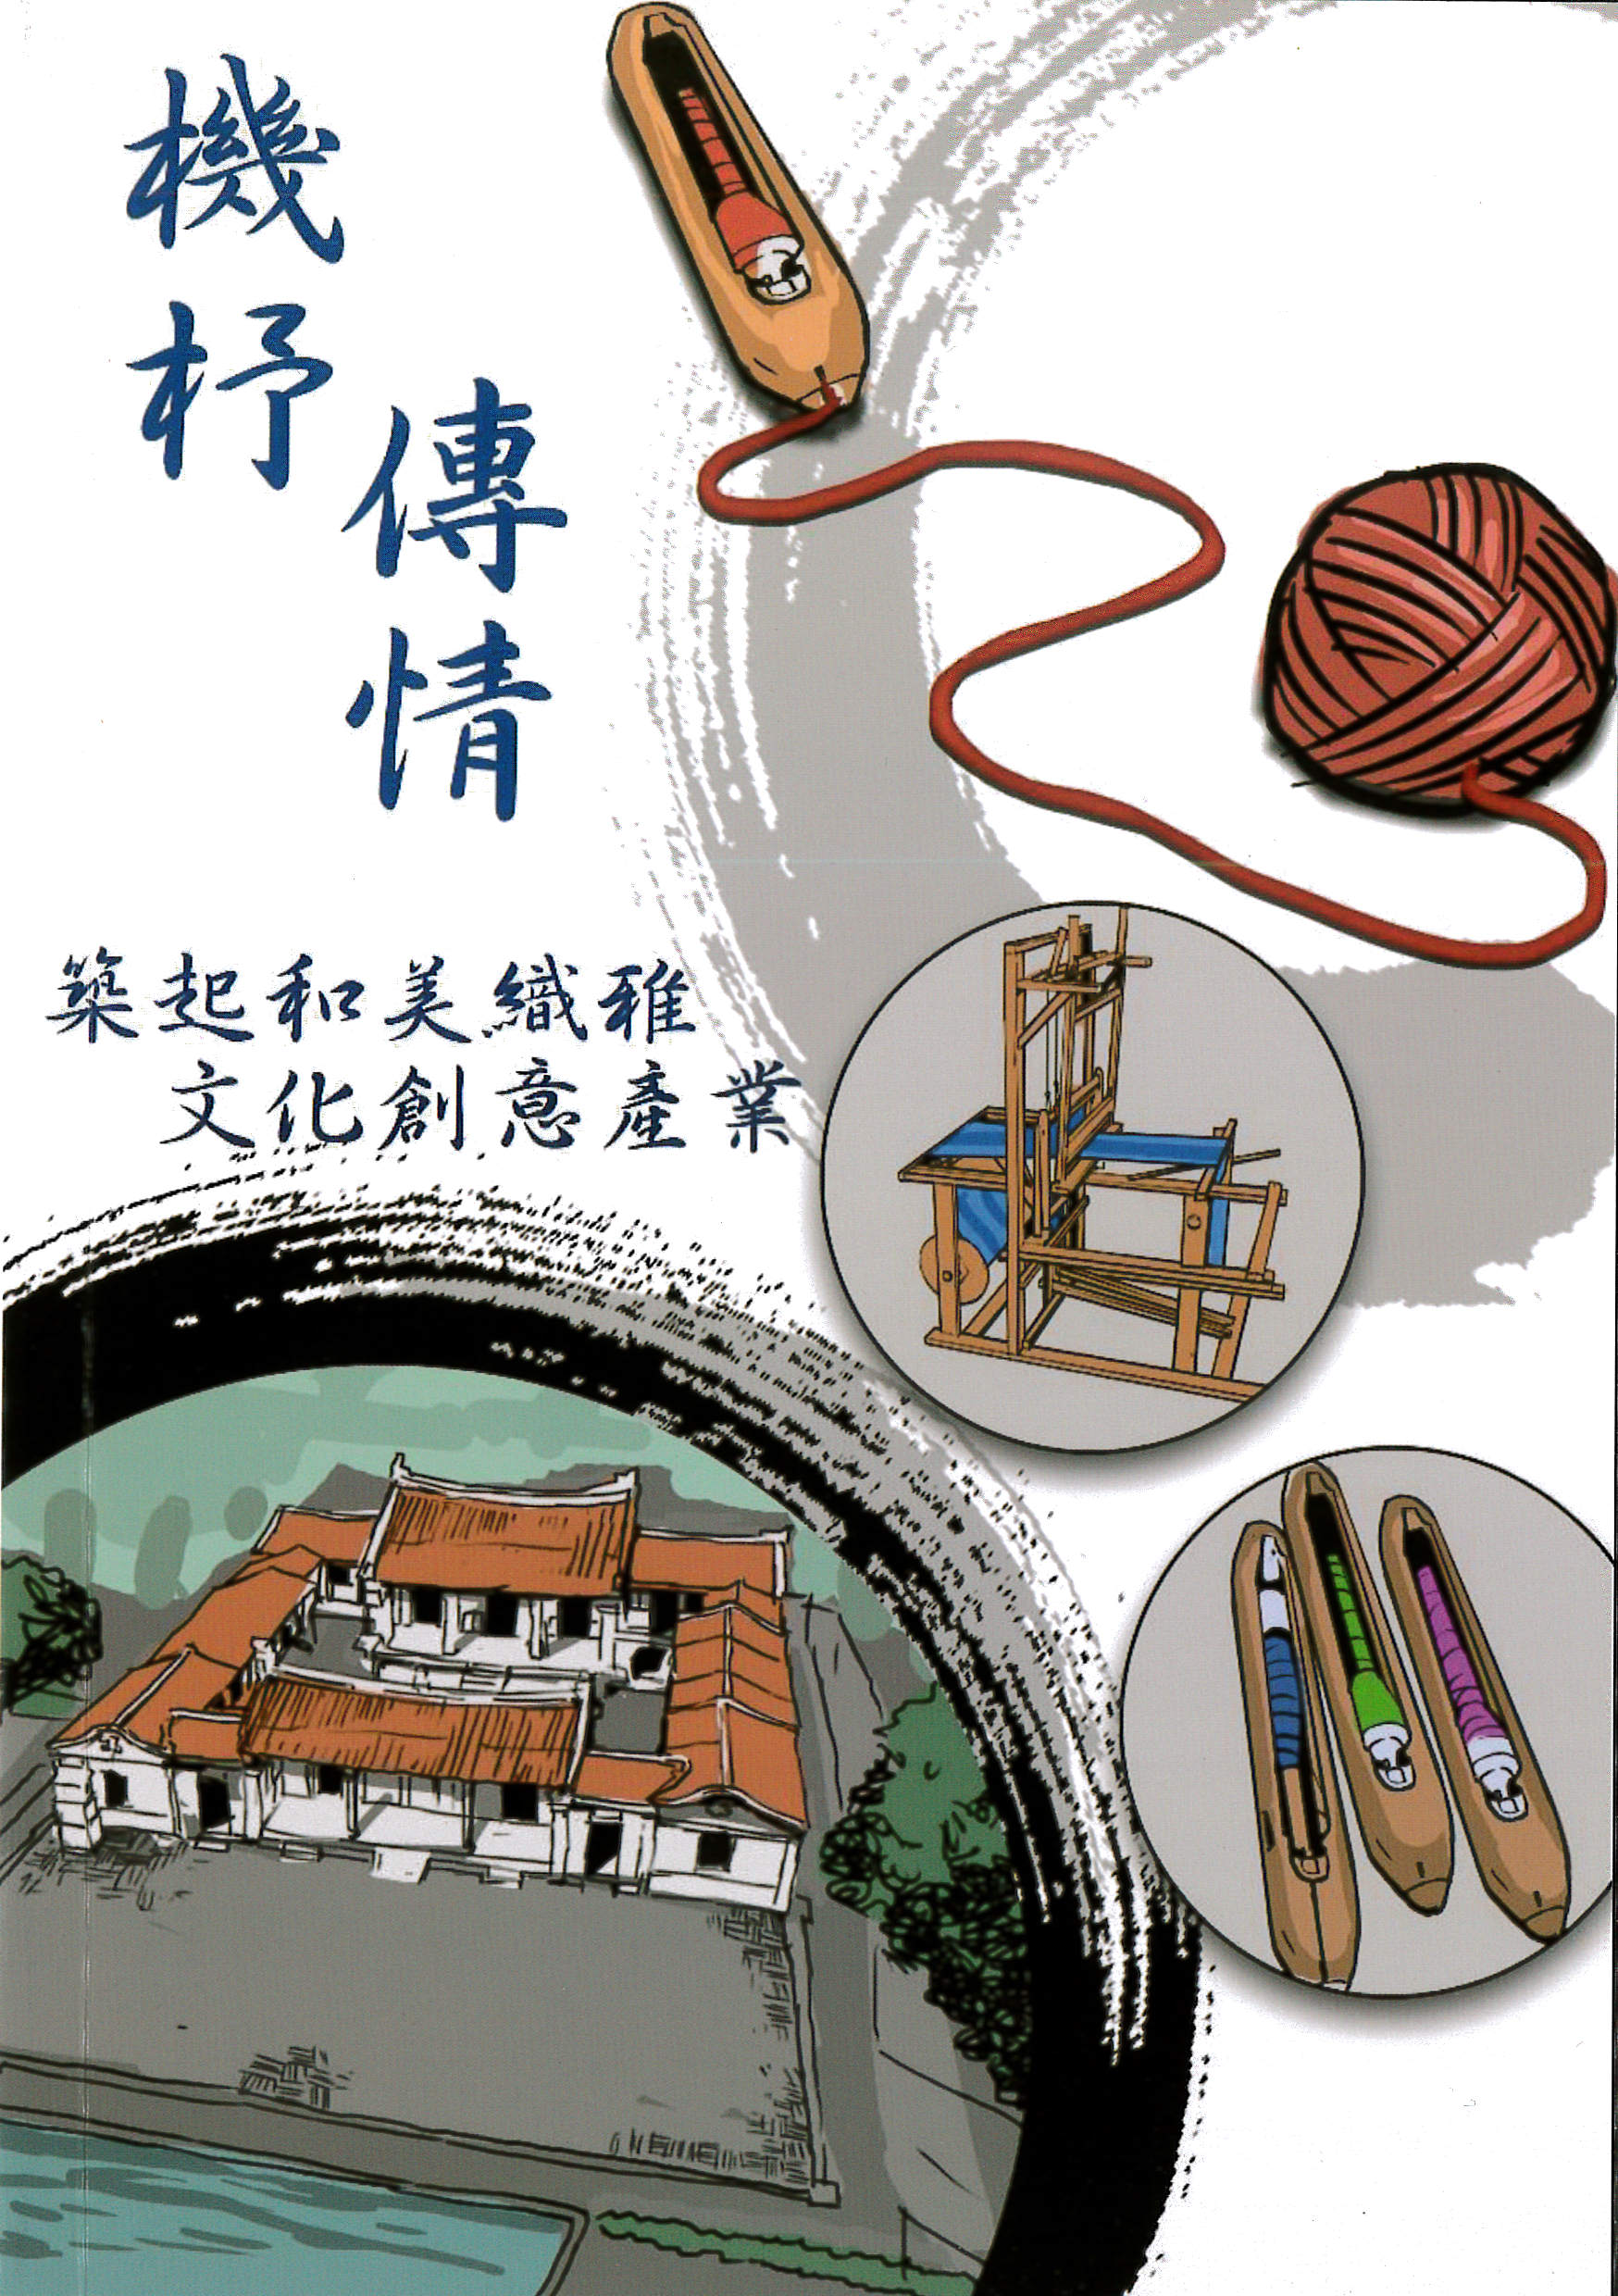 機杼傳情 : 築起和美織雅文化創意產業